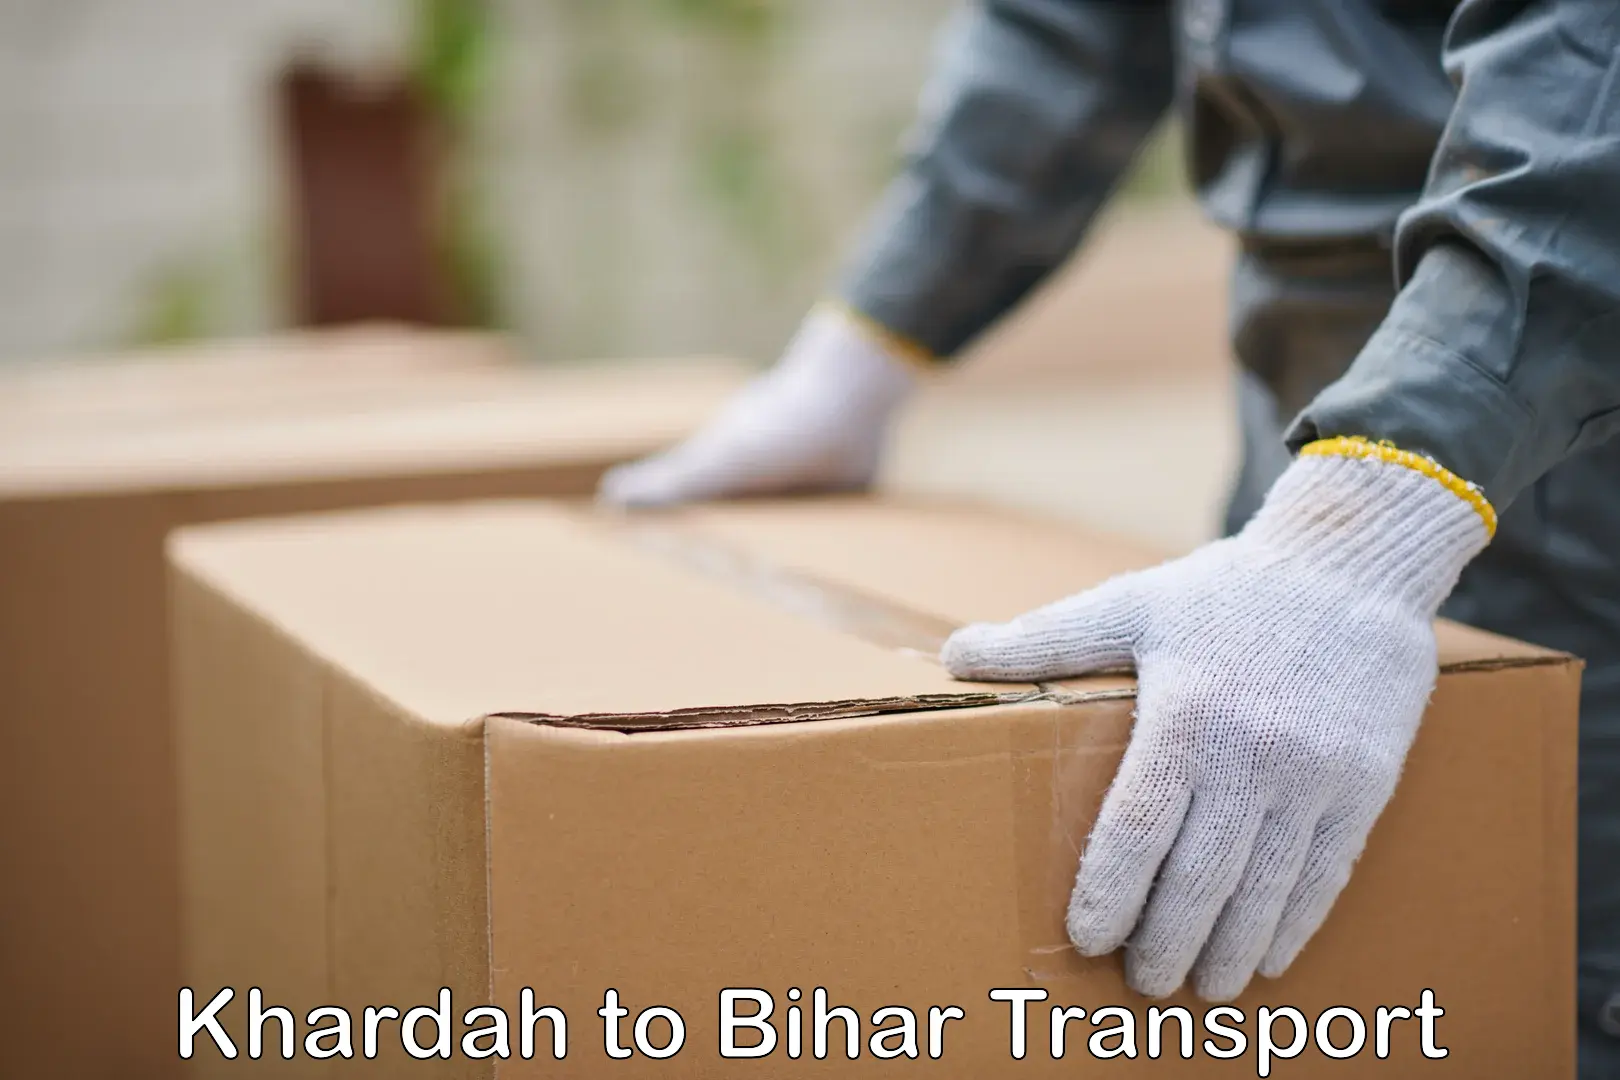 Online transport Khardah to Bihar